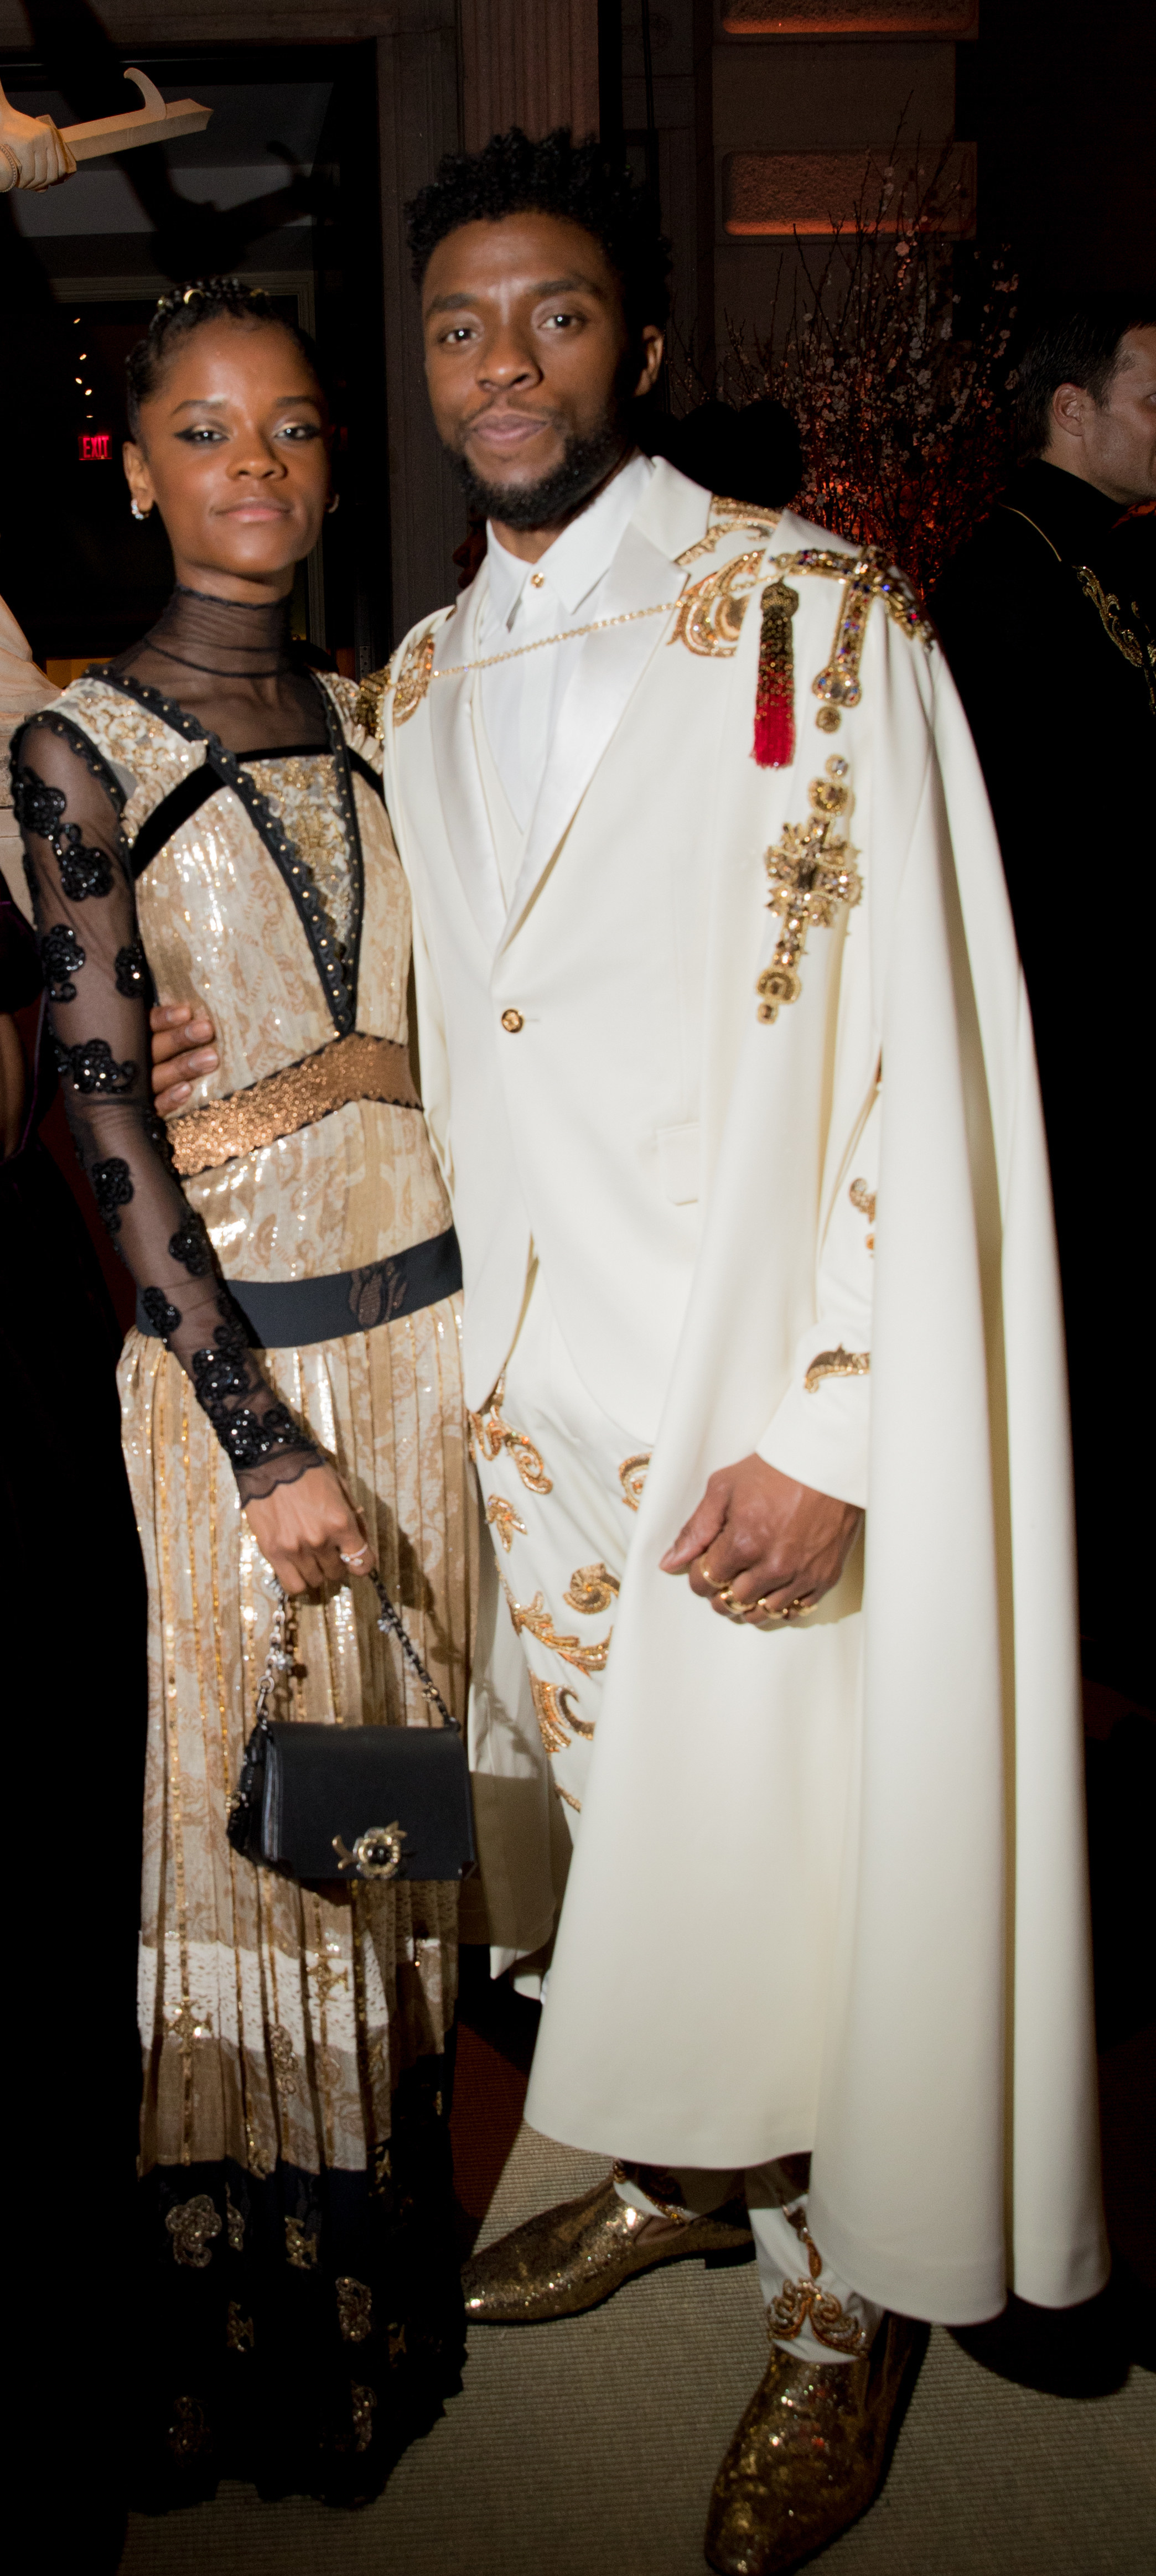 利蒂希娅赖特和查德威克Boseman出席天体:时尚,amp;天主教的想象力在大都会艺术博物馆时装学院庆典的5月7日,2018年在纽约市。